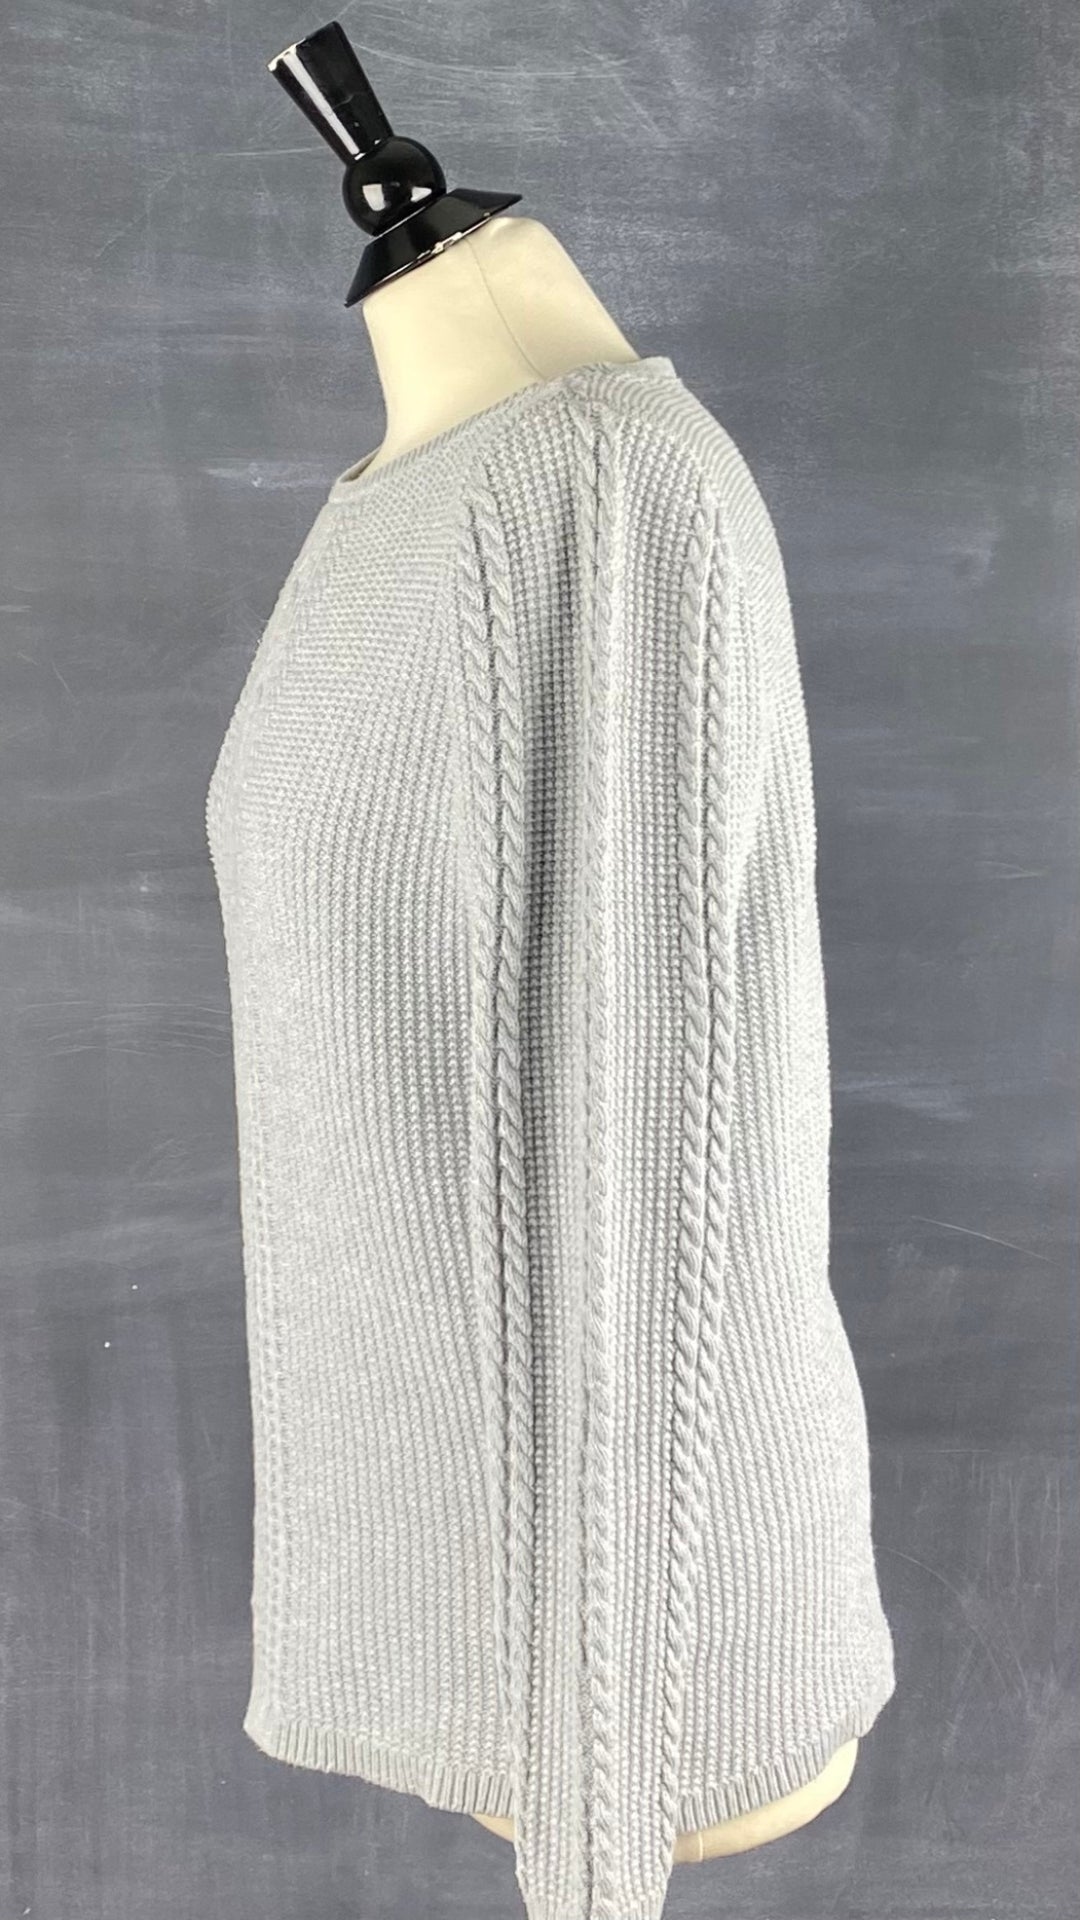 Chandail en tricot gris Nautica avec de magnifiques torsades aux manches et sur le devant. Vue de côté.